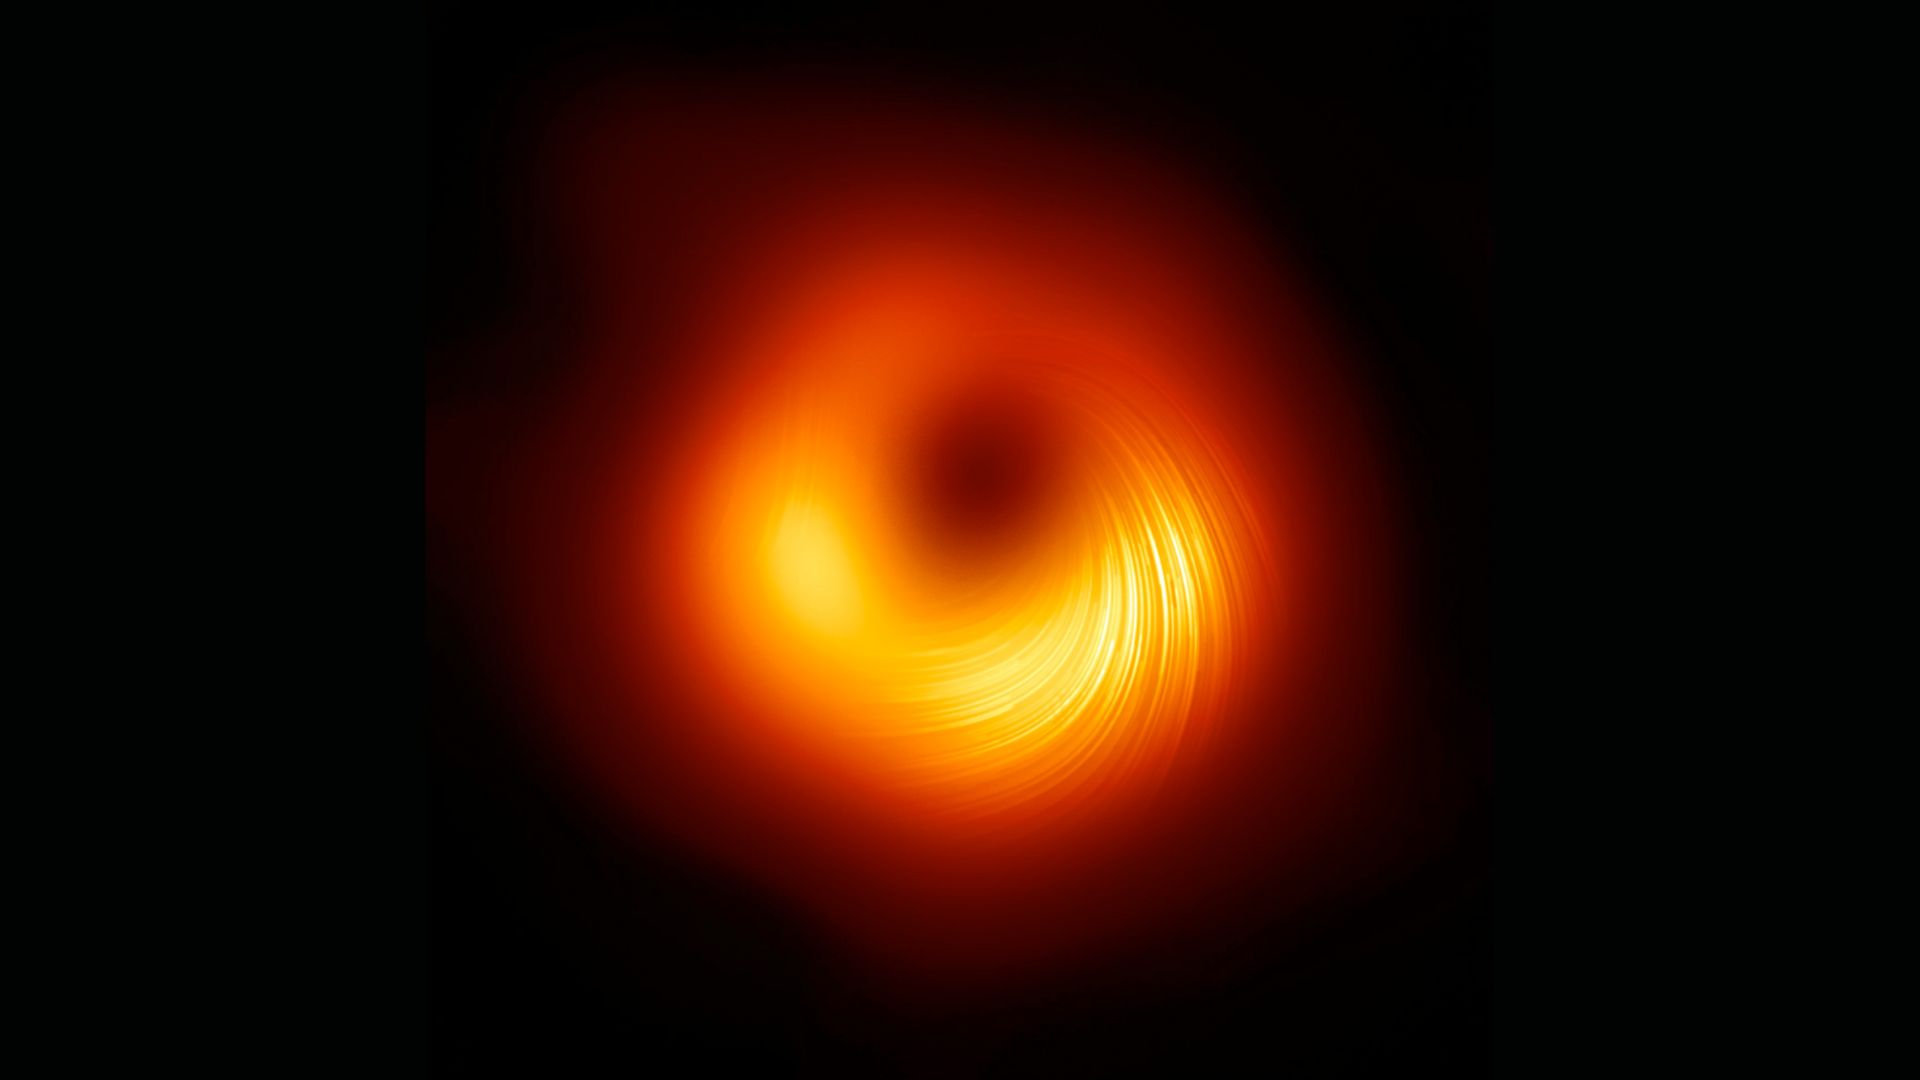 Vue du trou noir supermassif M87 en lumière polarisée.